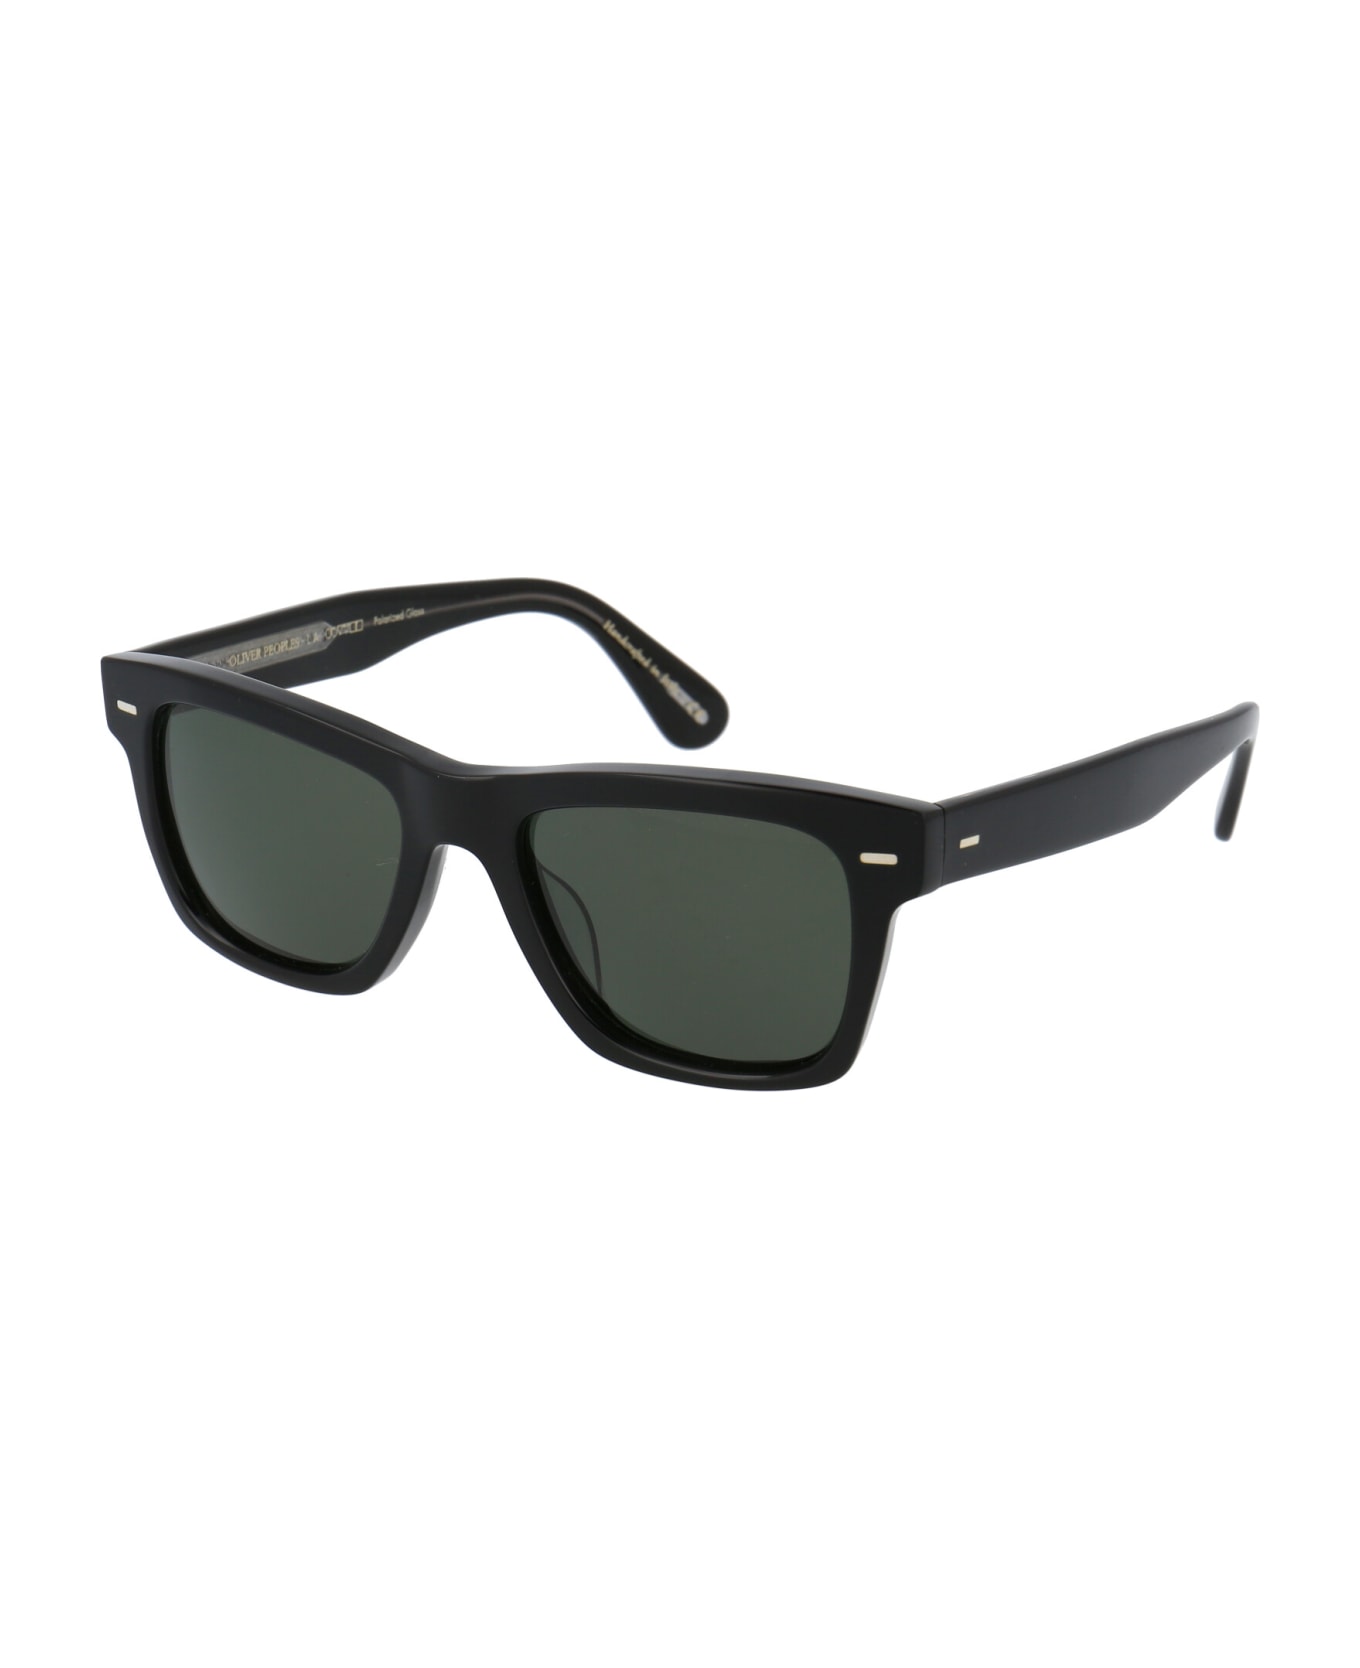 Oliver Peoples Oliver Sun Sunglasses - 1492P1 BLACK